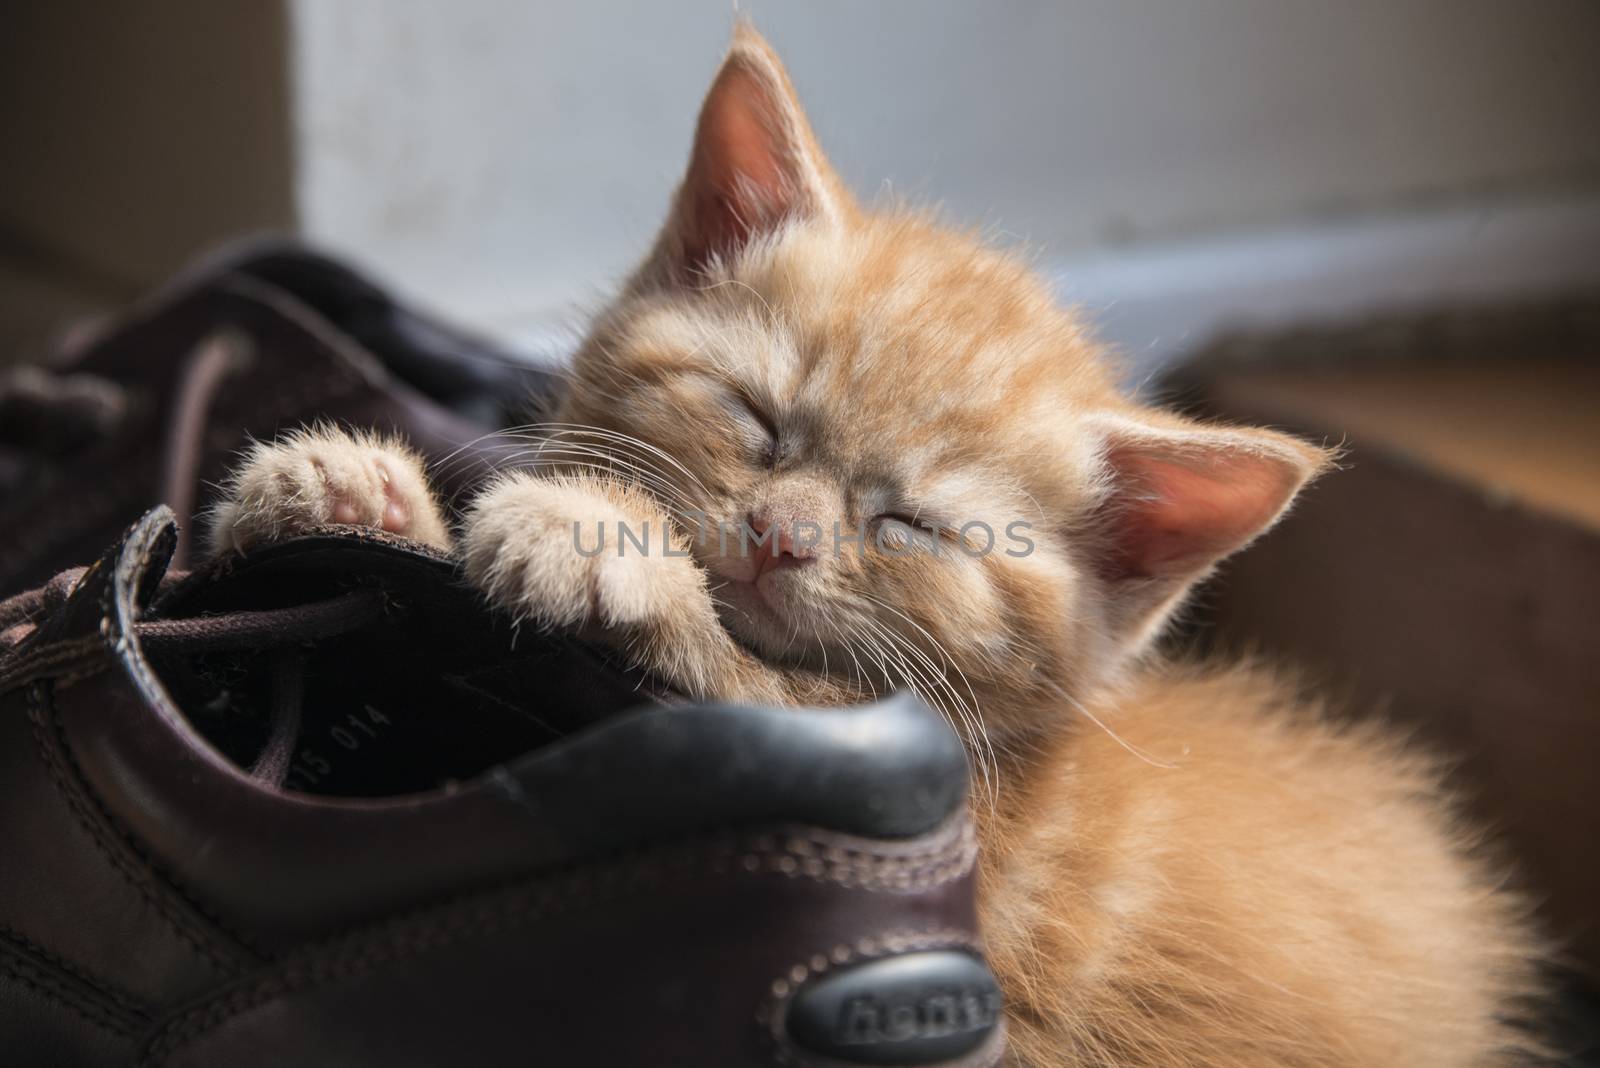 A ginger kitten asleep on a boot